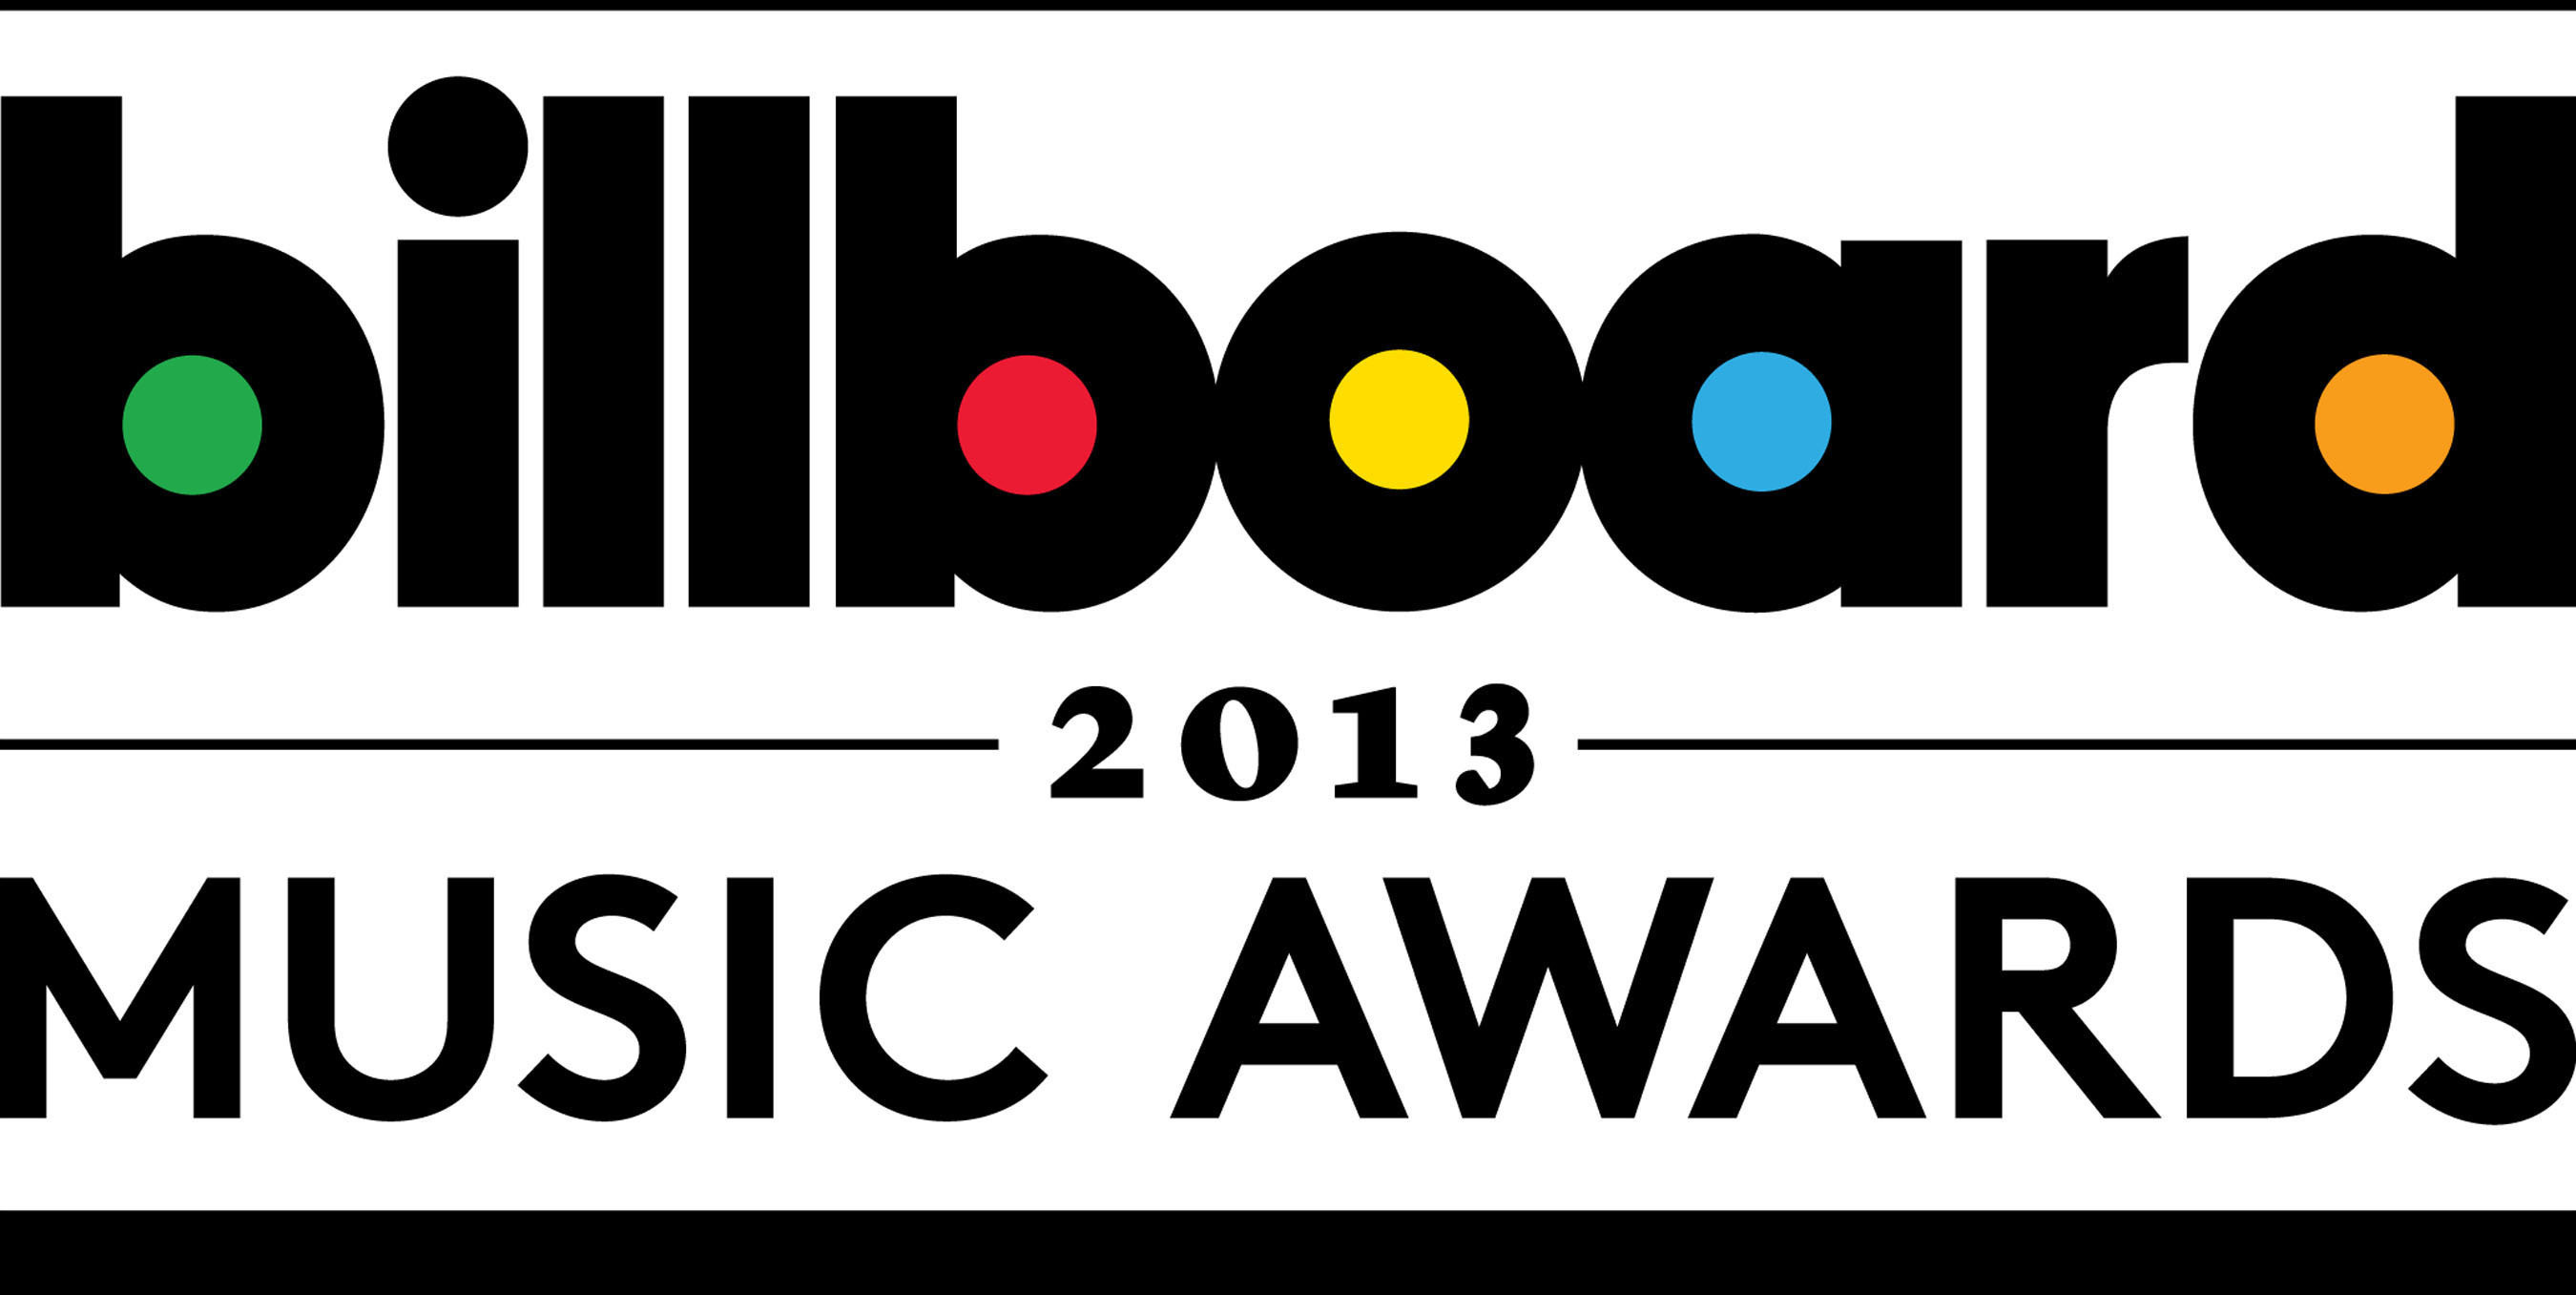 BILLBOARD 2013 MUSIC AWARDS LOGO